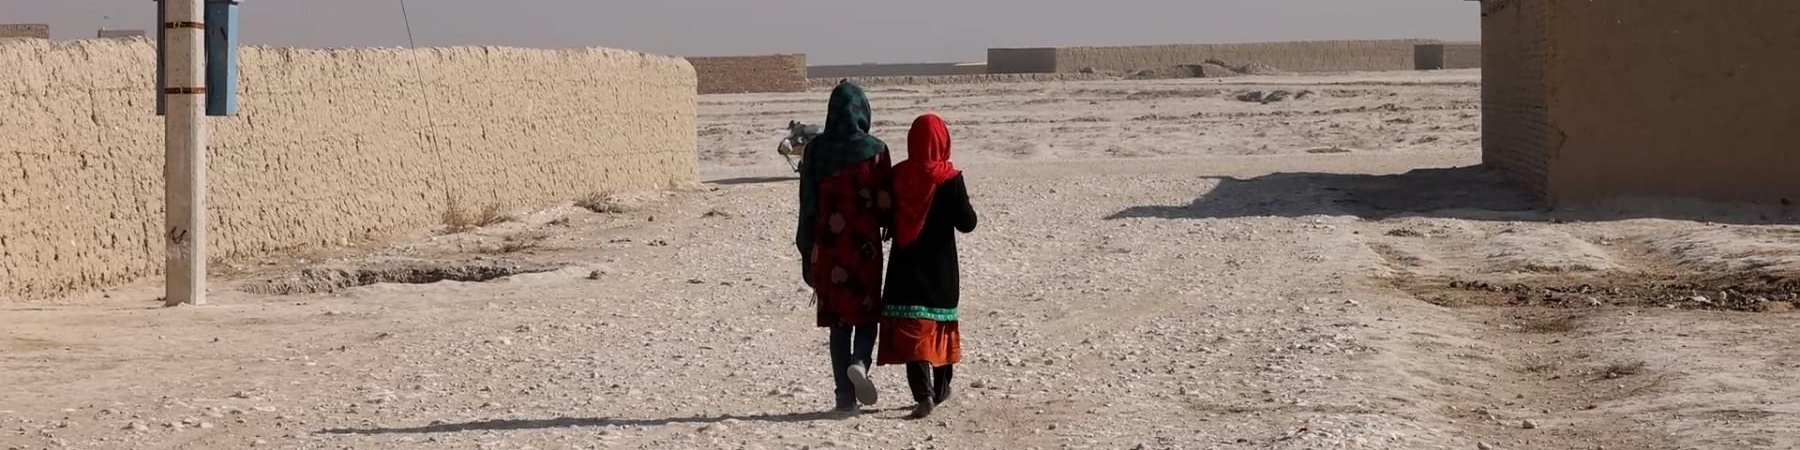 due bambine afghane riprese mentre camminano di spalle in territorio desertico